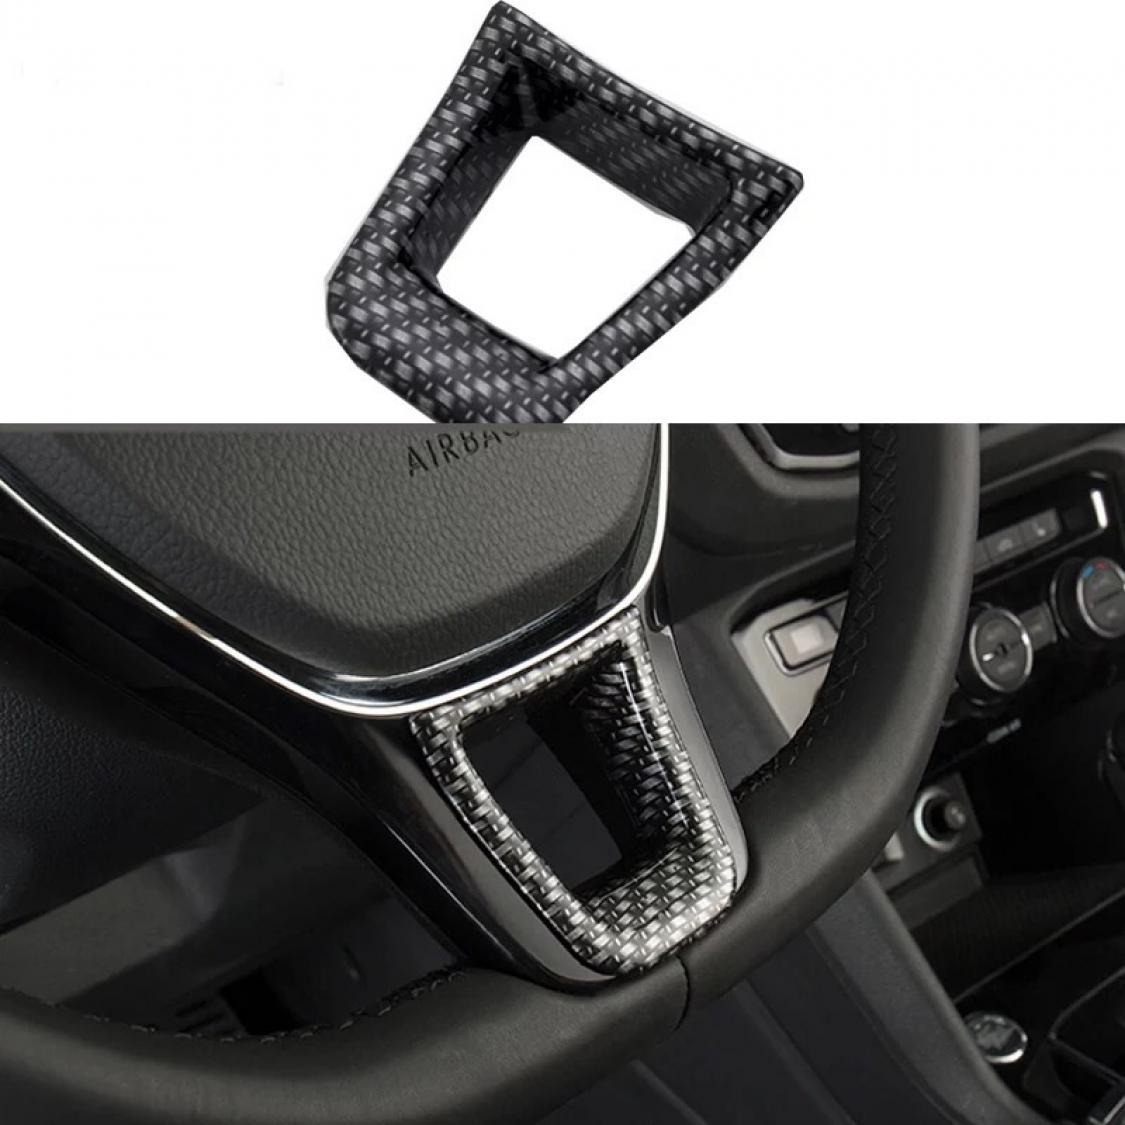 Für VW Beetle ABS Carbon Innenraum Auto Türgriff Rahmen Abdeckung